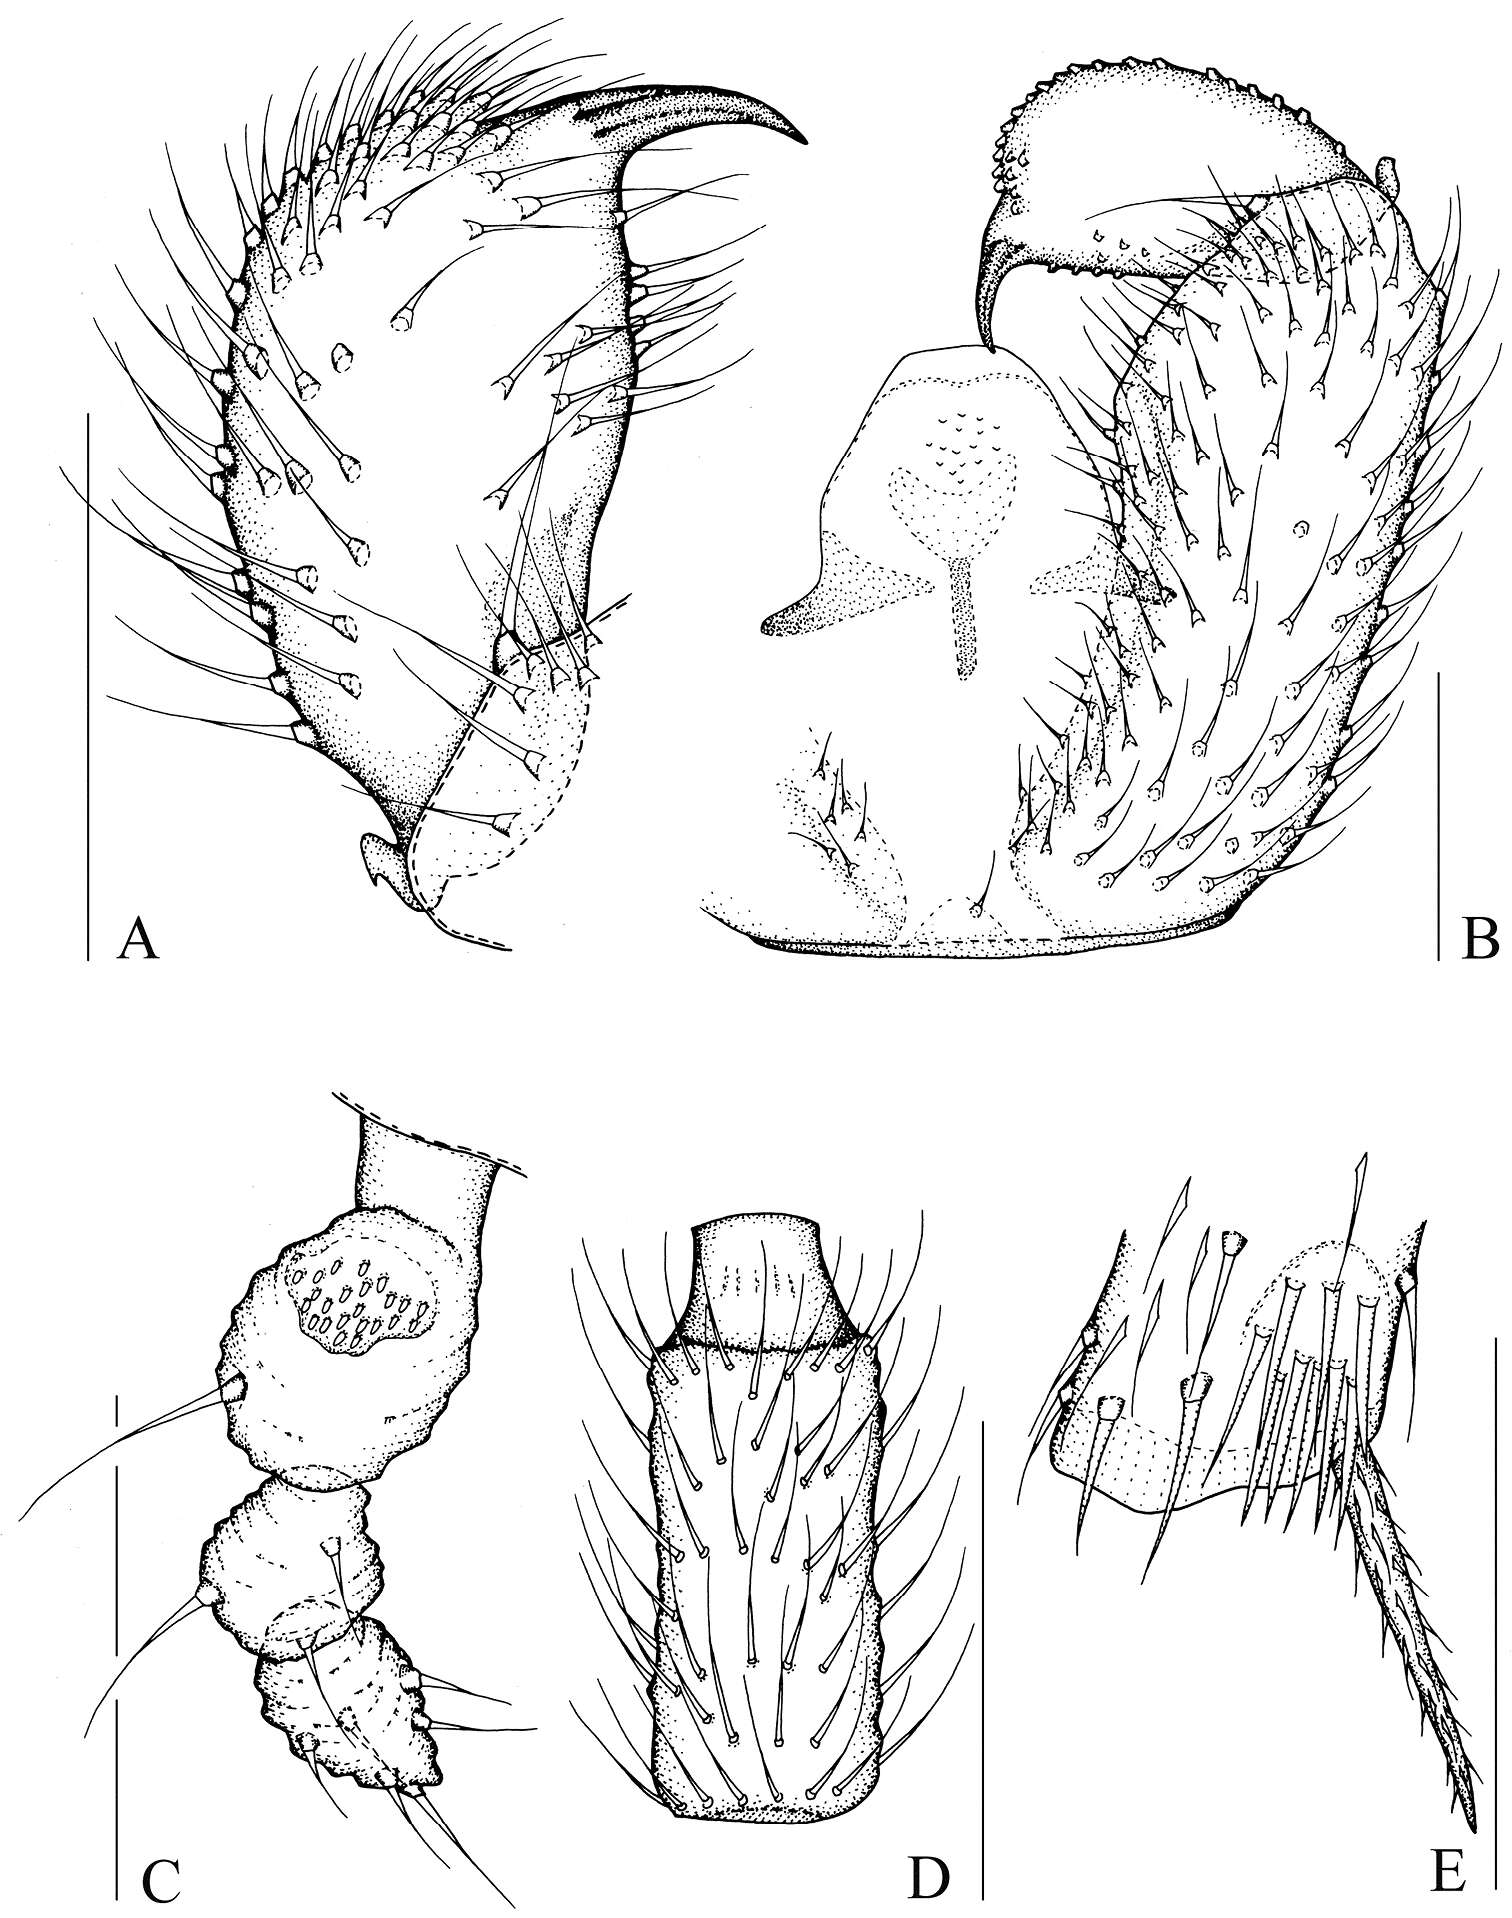 Image of Peyerimhoffia brachypoda Shi, Huang, Zhang & Wu 2014